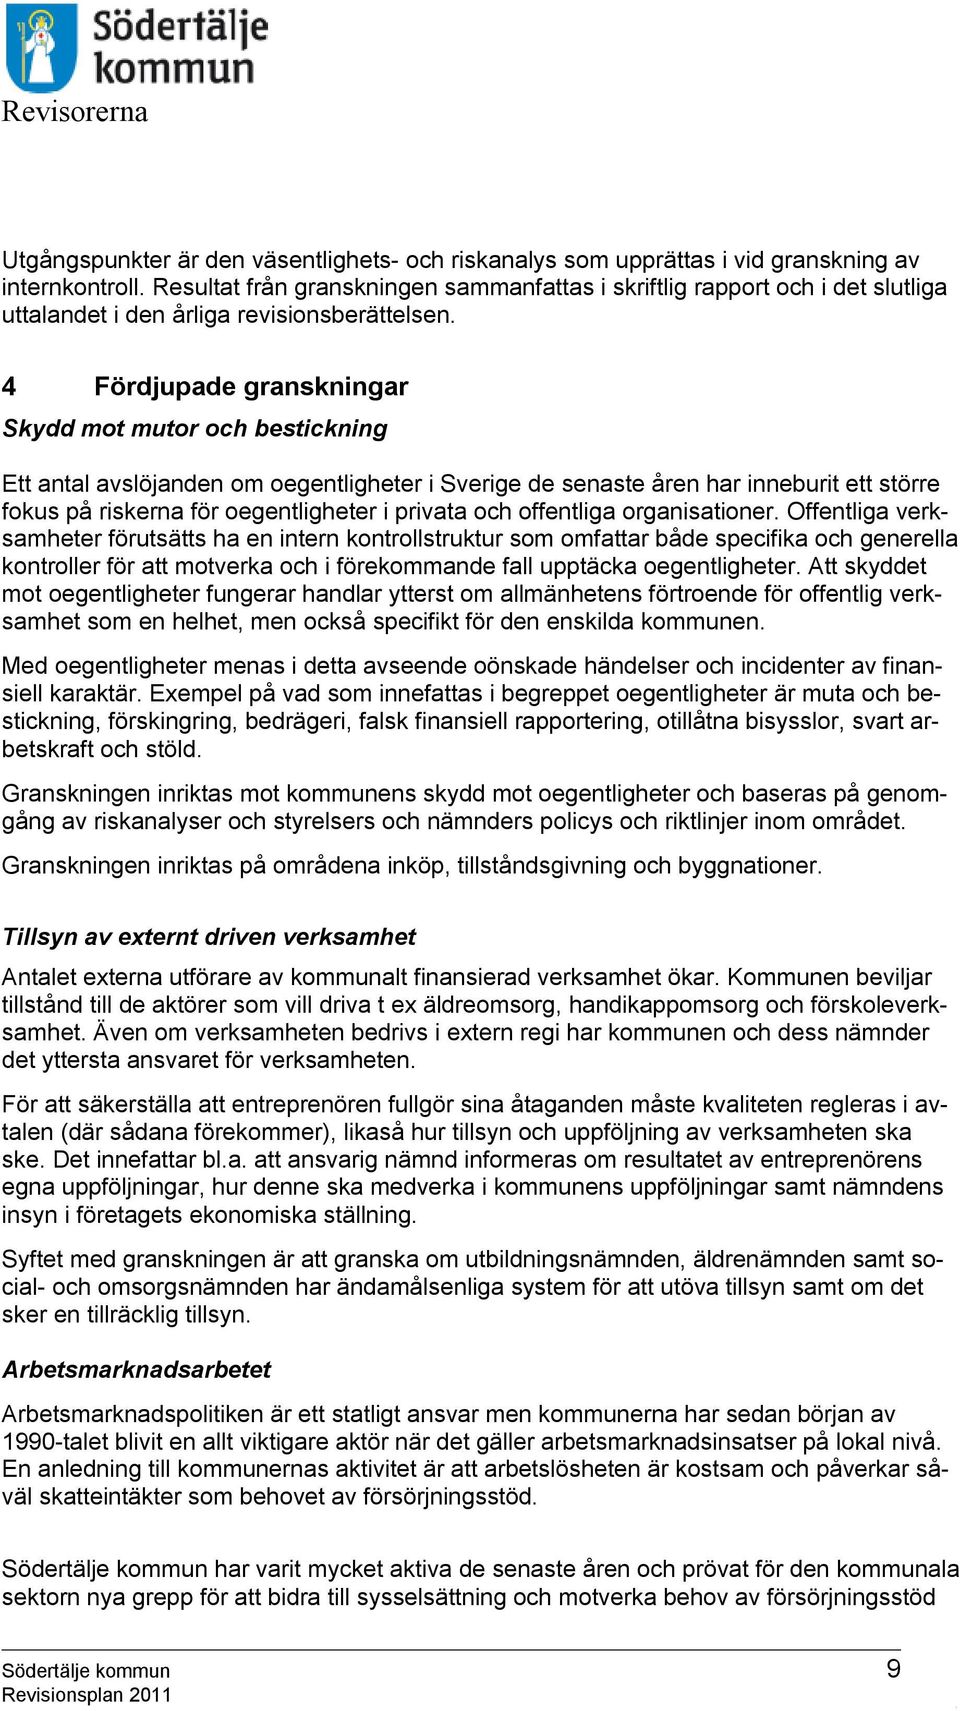 4 Fördjupade granskningar Skydd mot mutor och bestickning Ett antal avslöjanden om oegentligheter i Sverige de senaste åren har inneburit ett större fokus på riskerna för oegentligheter i privata och